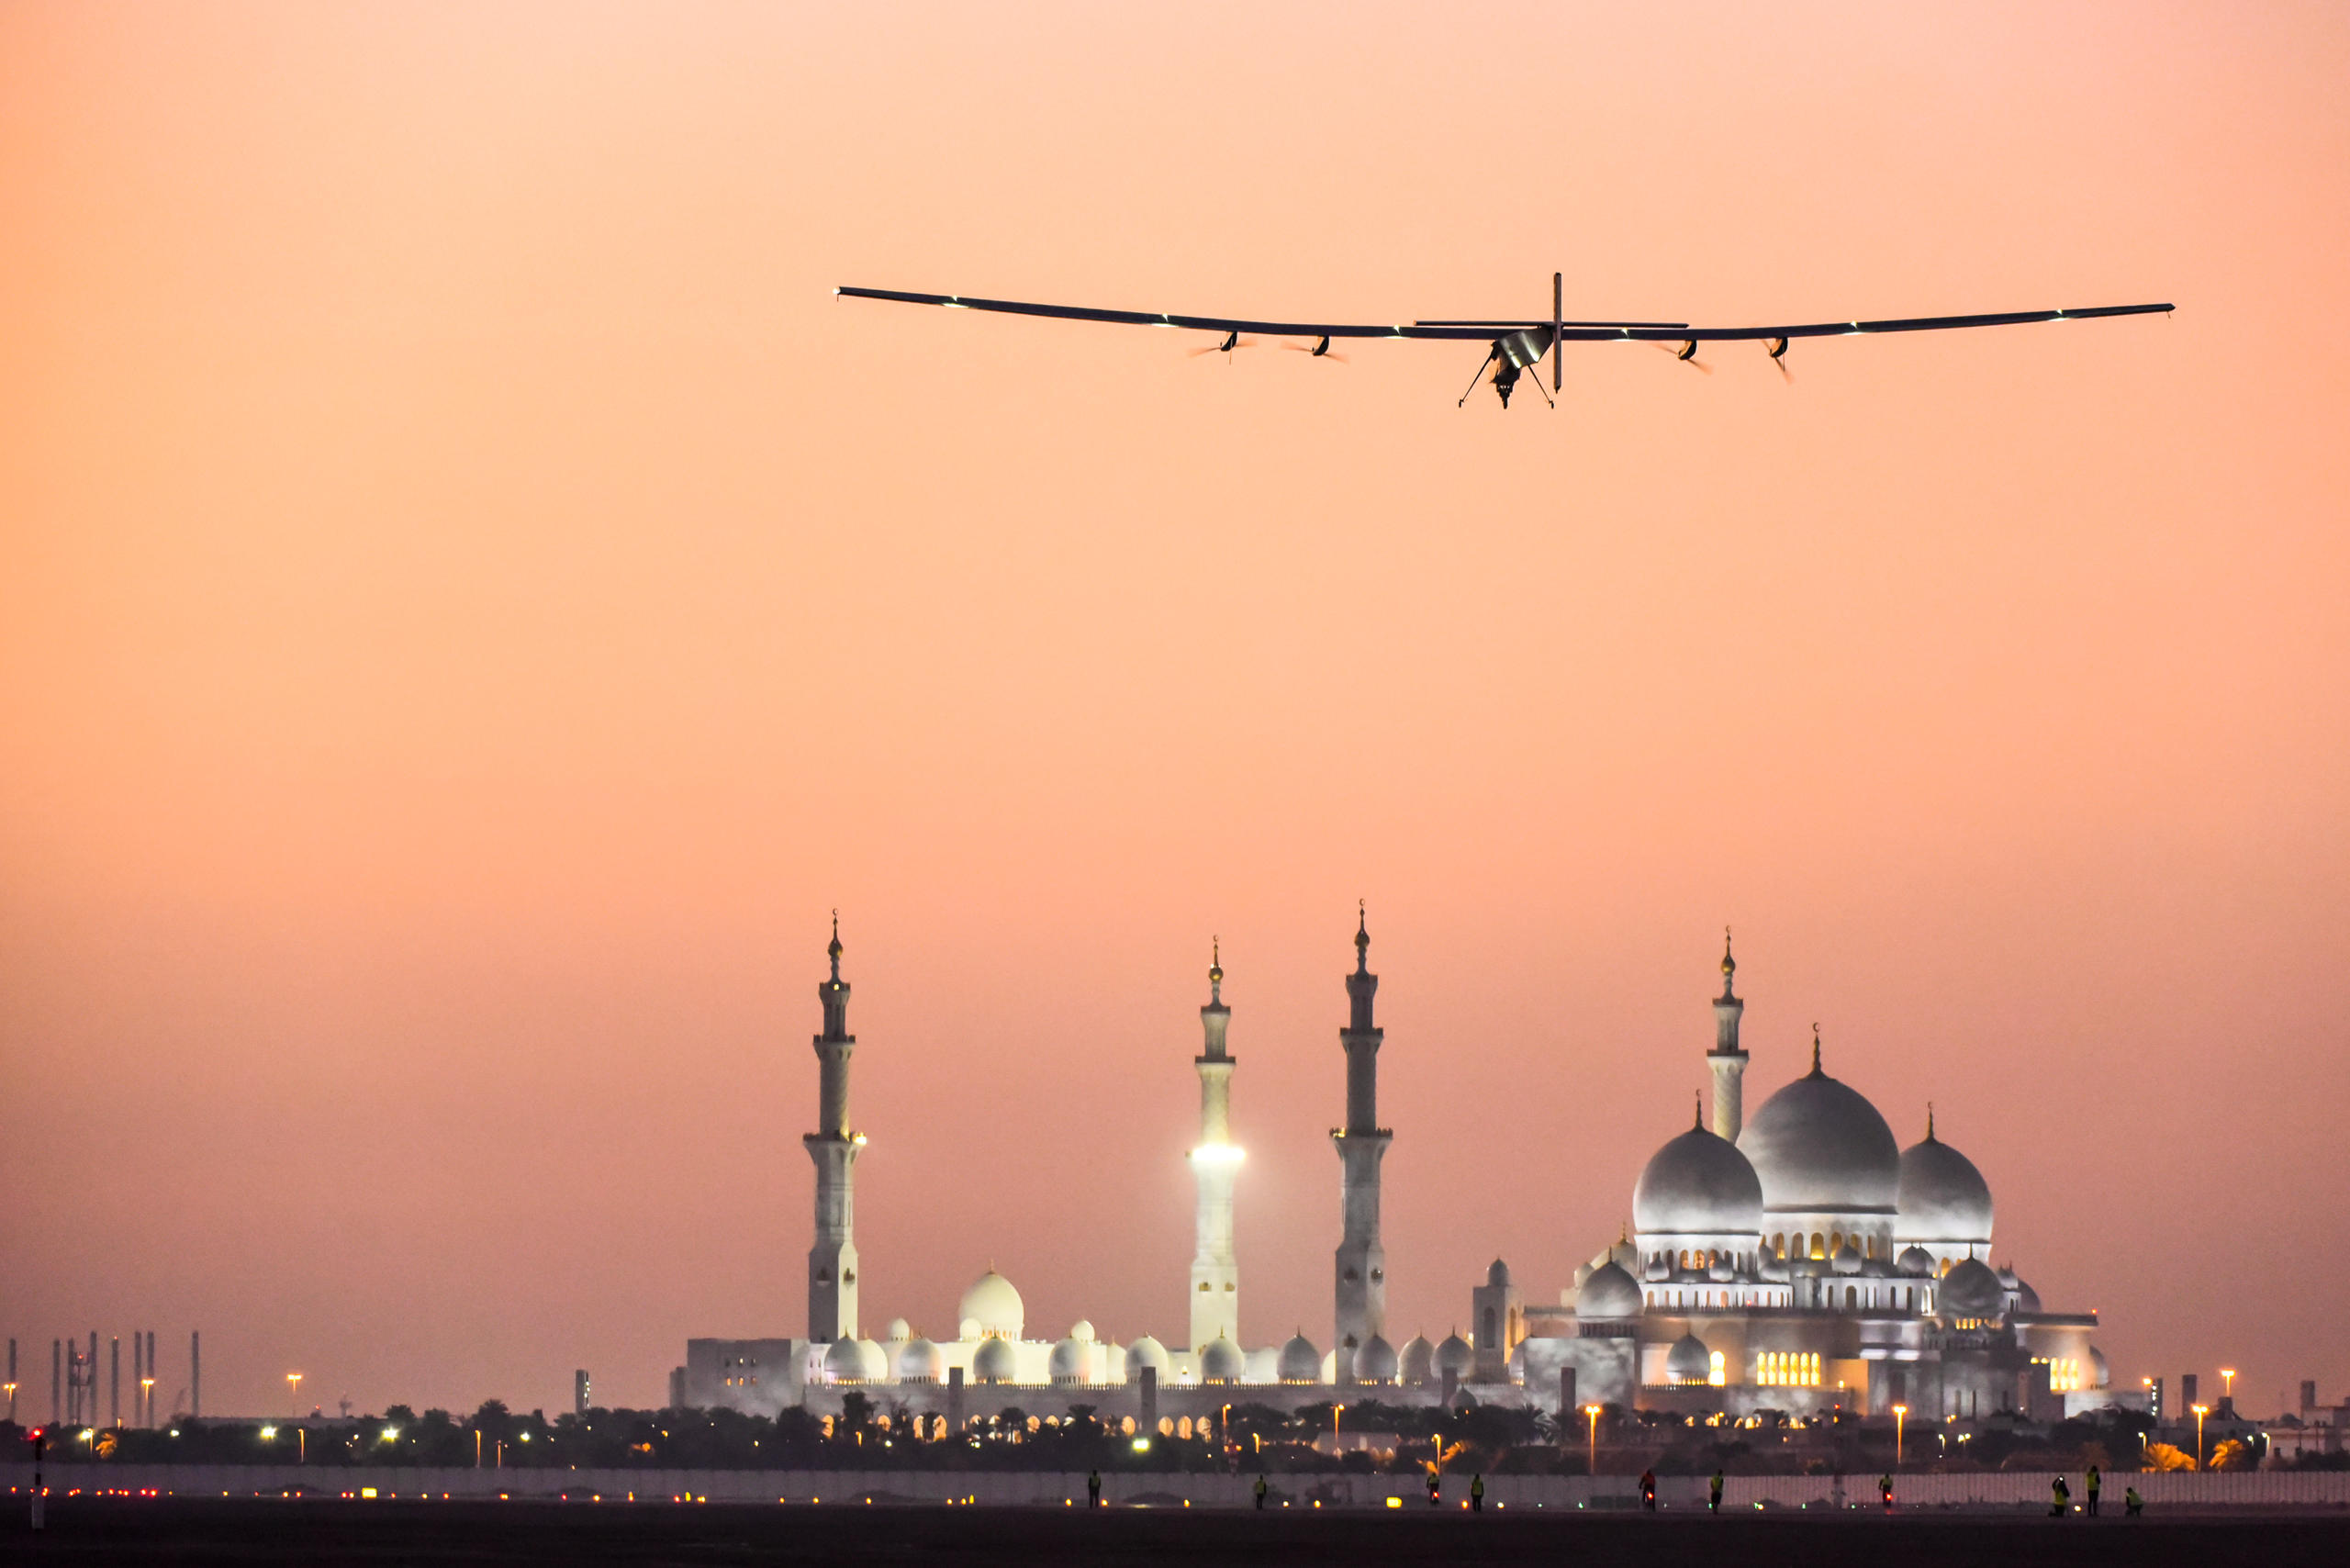 Solar Impulse above Abu Dhabi